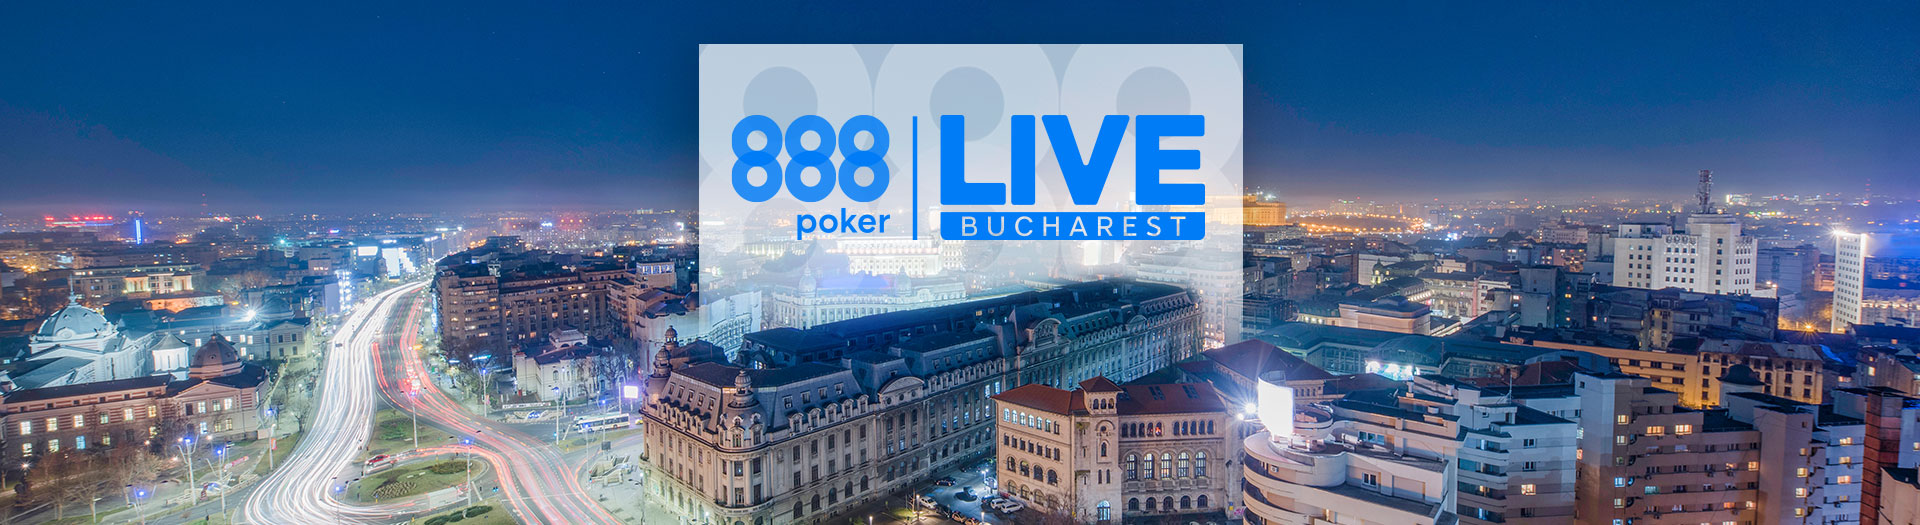 Live-Bucharest-LP